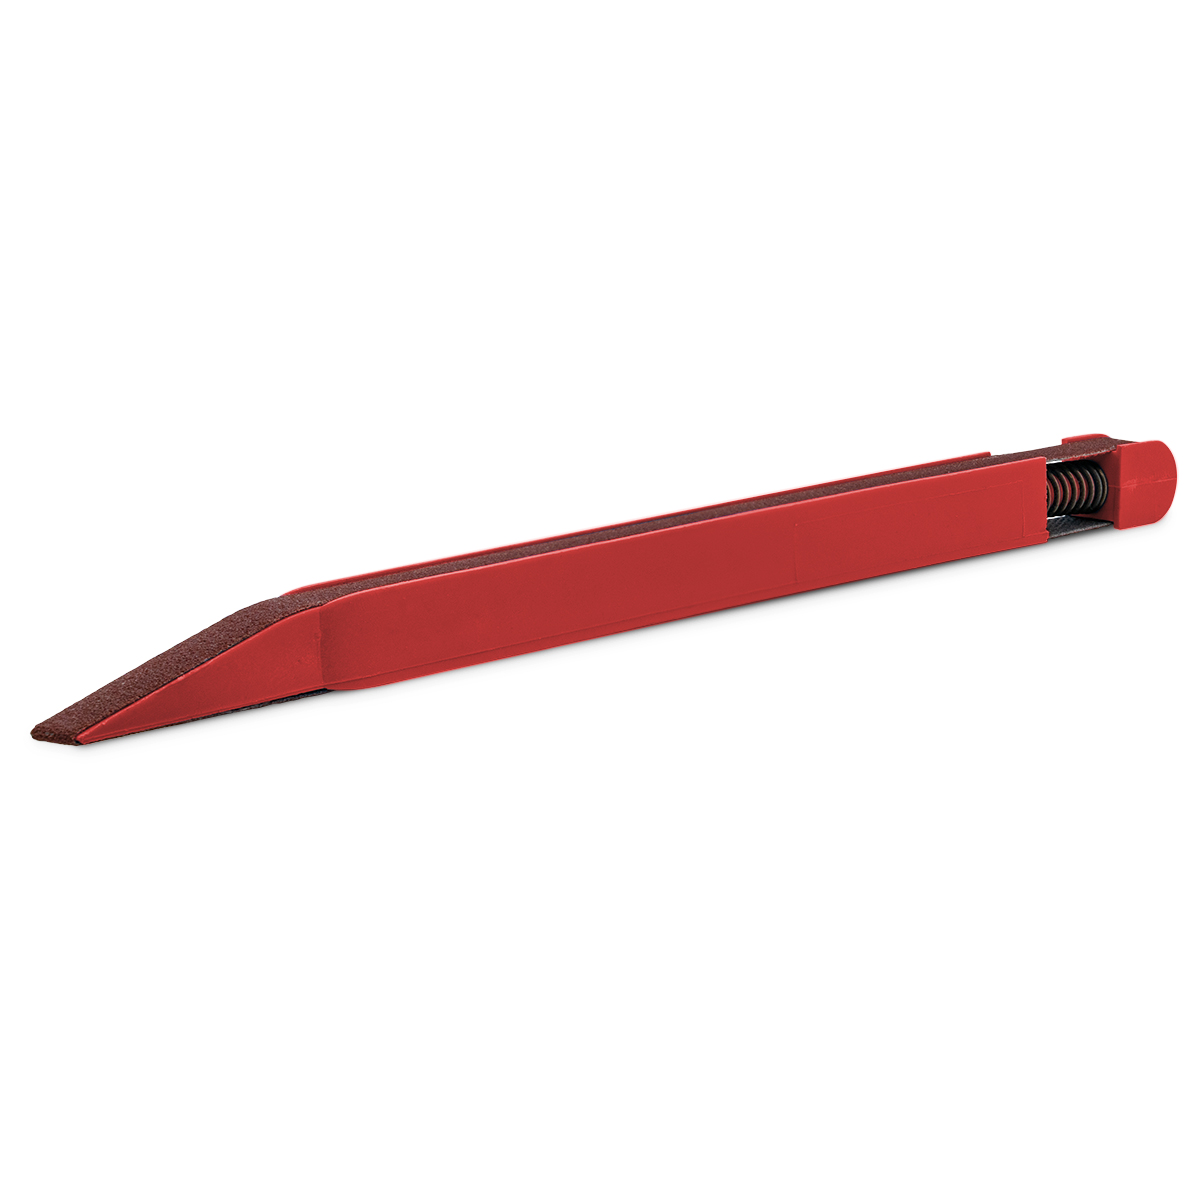 Schleifstift, Korn 120, rot, für Schleifbänder mit 7 x 330 mm